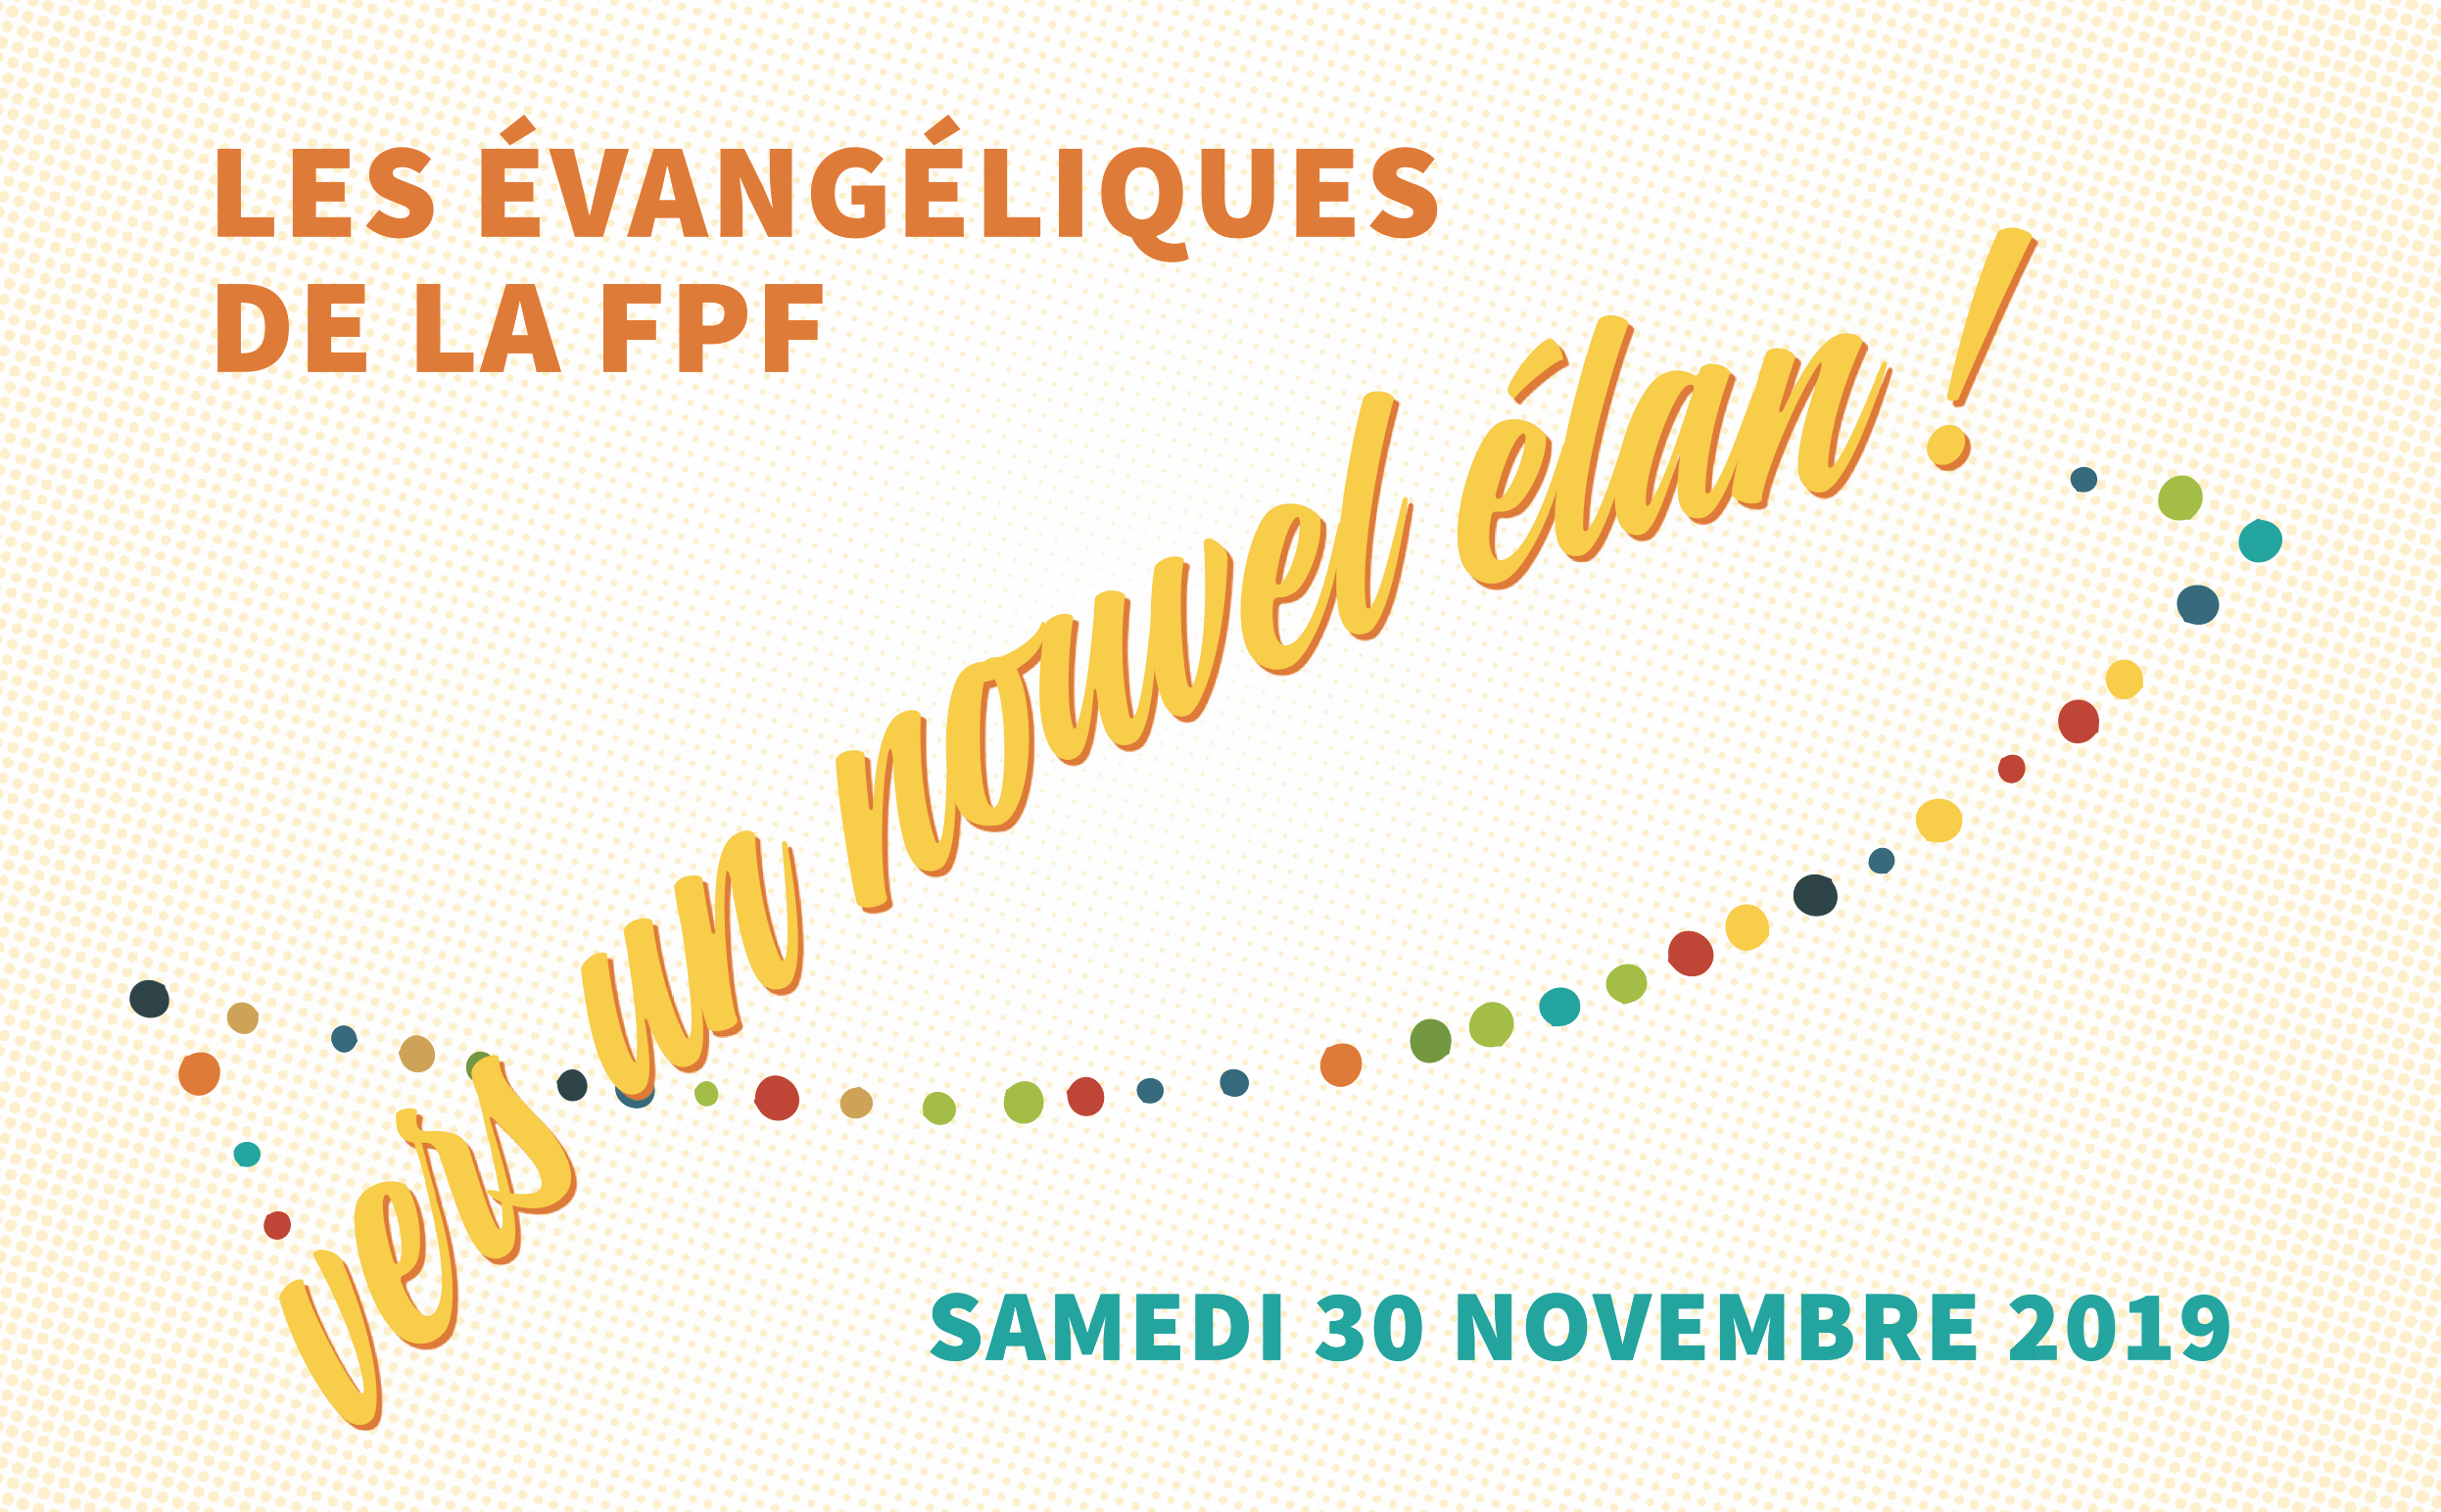 La Fédération protestante de France organise un colloque le 30 novembre 2019 sur "Les Evangéliques de la FPF - Vers un nouvel élan !"